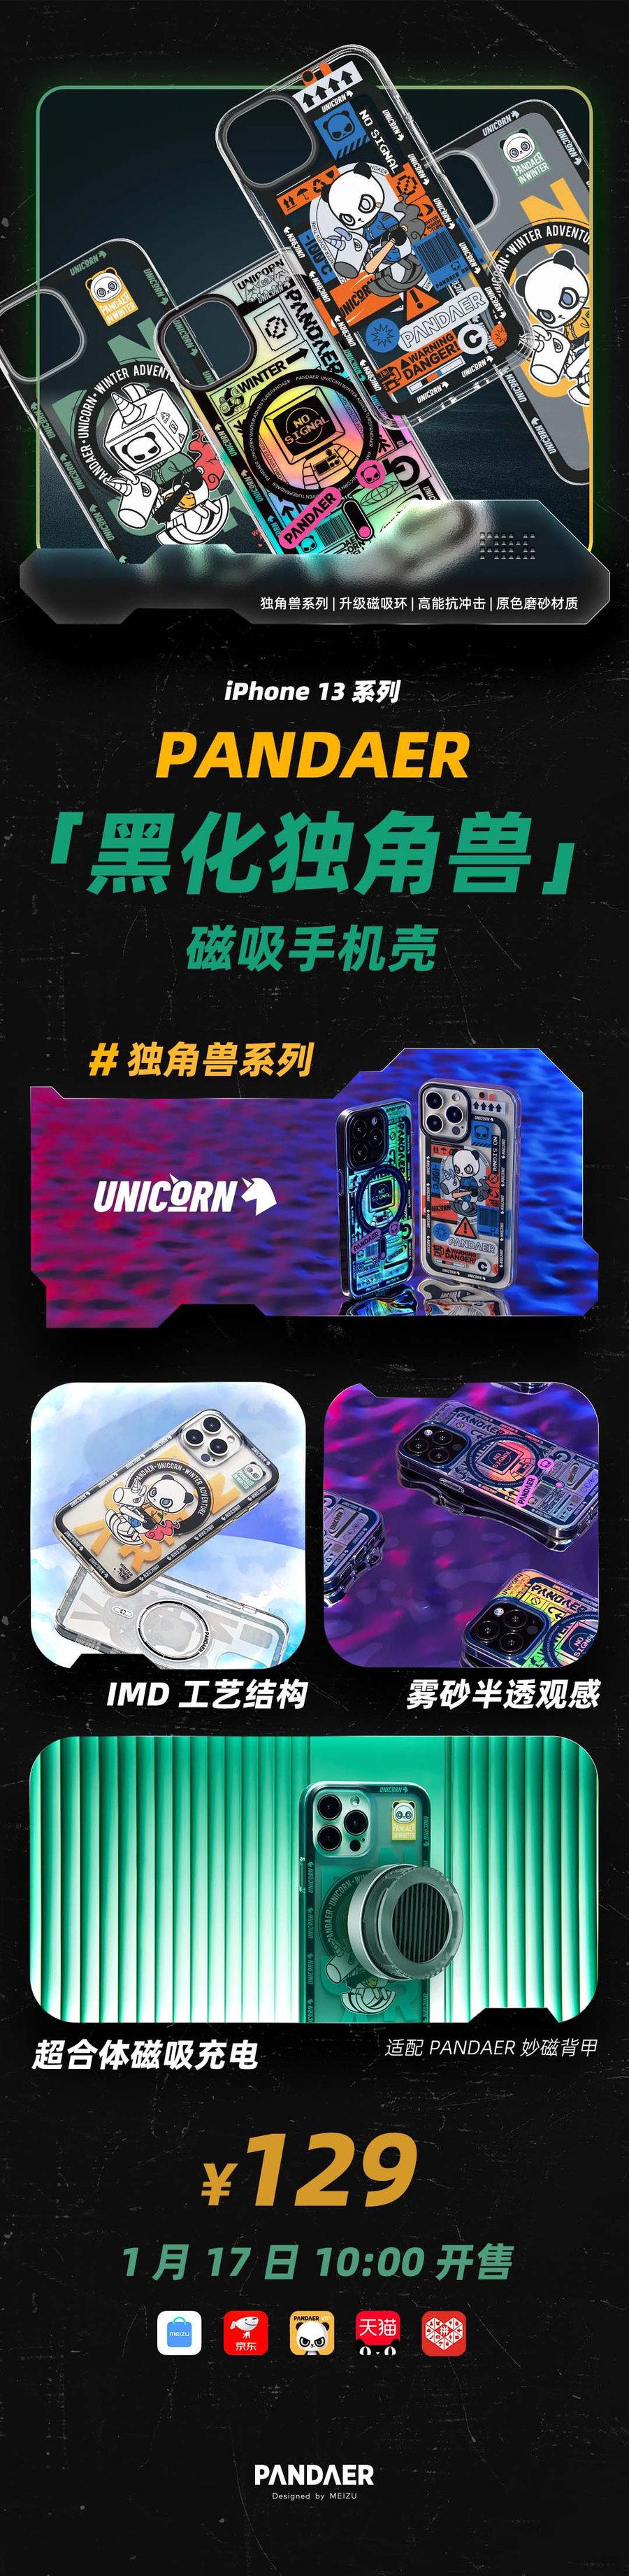  魅族推出 iPhone13 保护壳，售价 129 元 